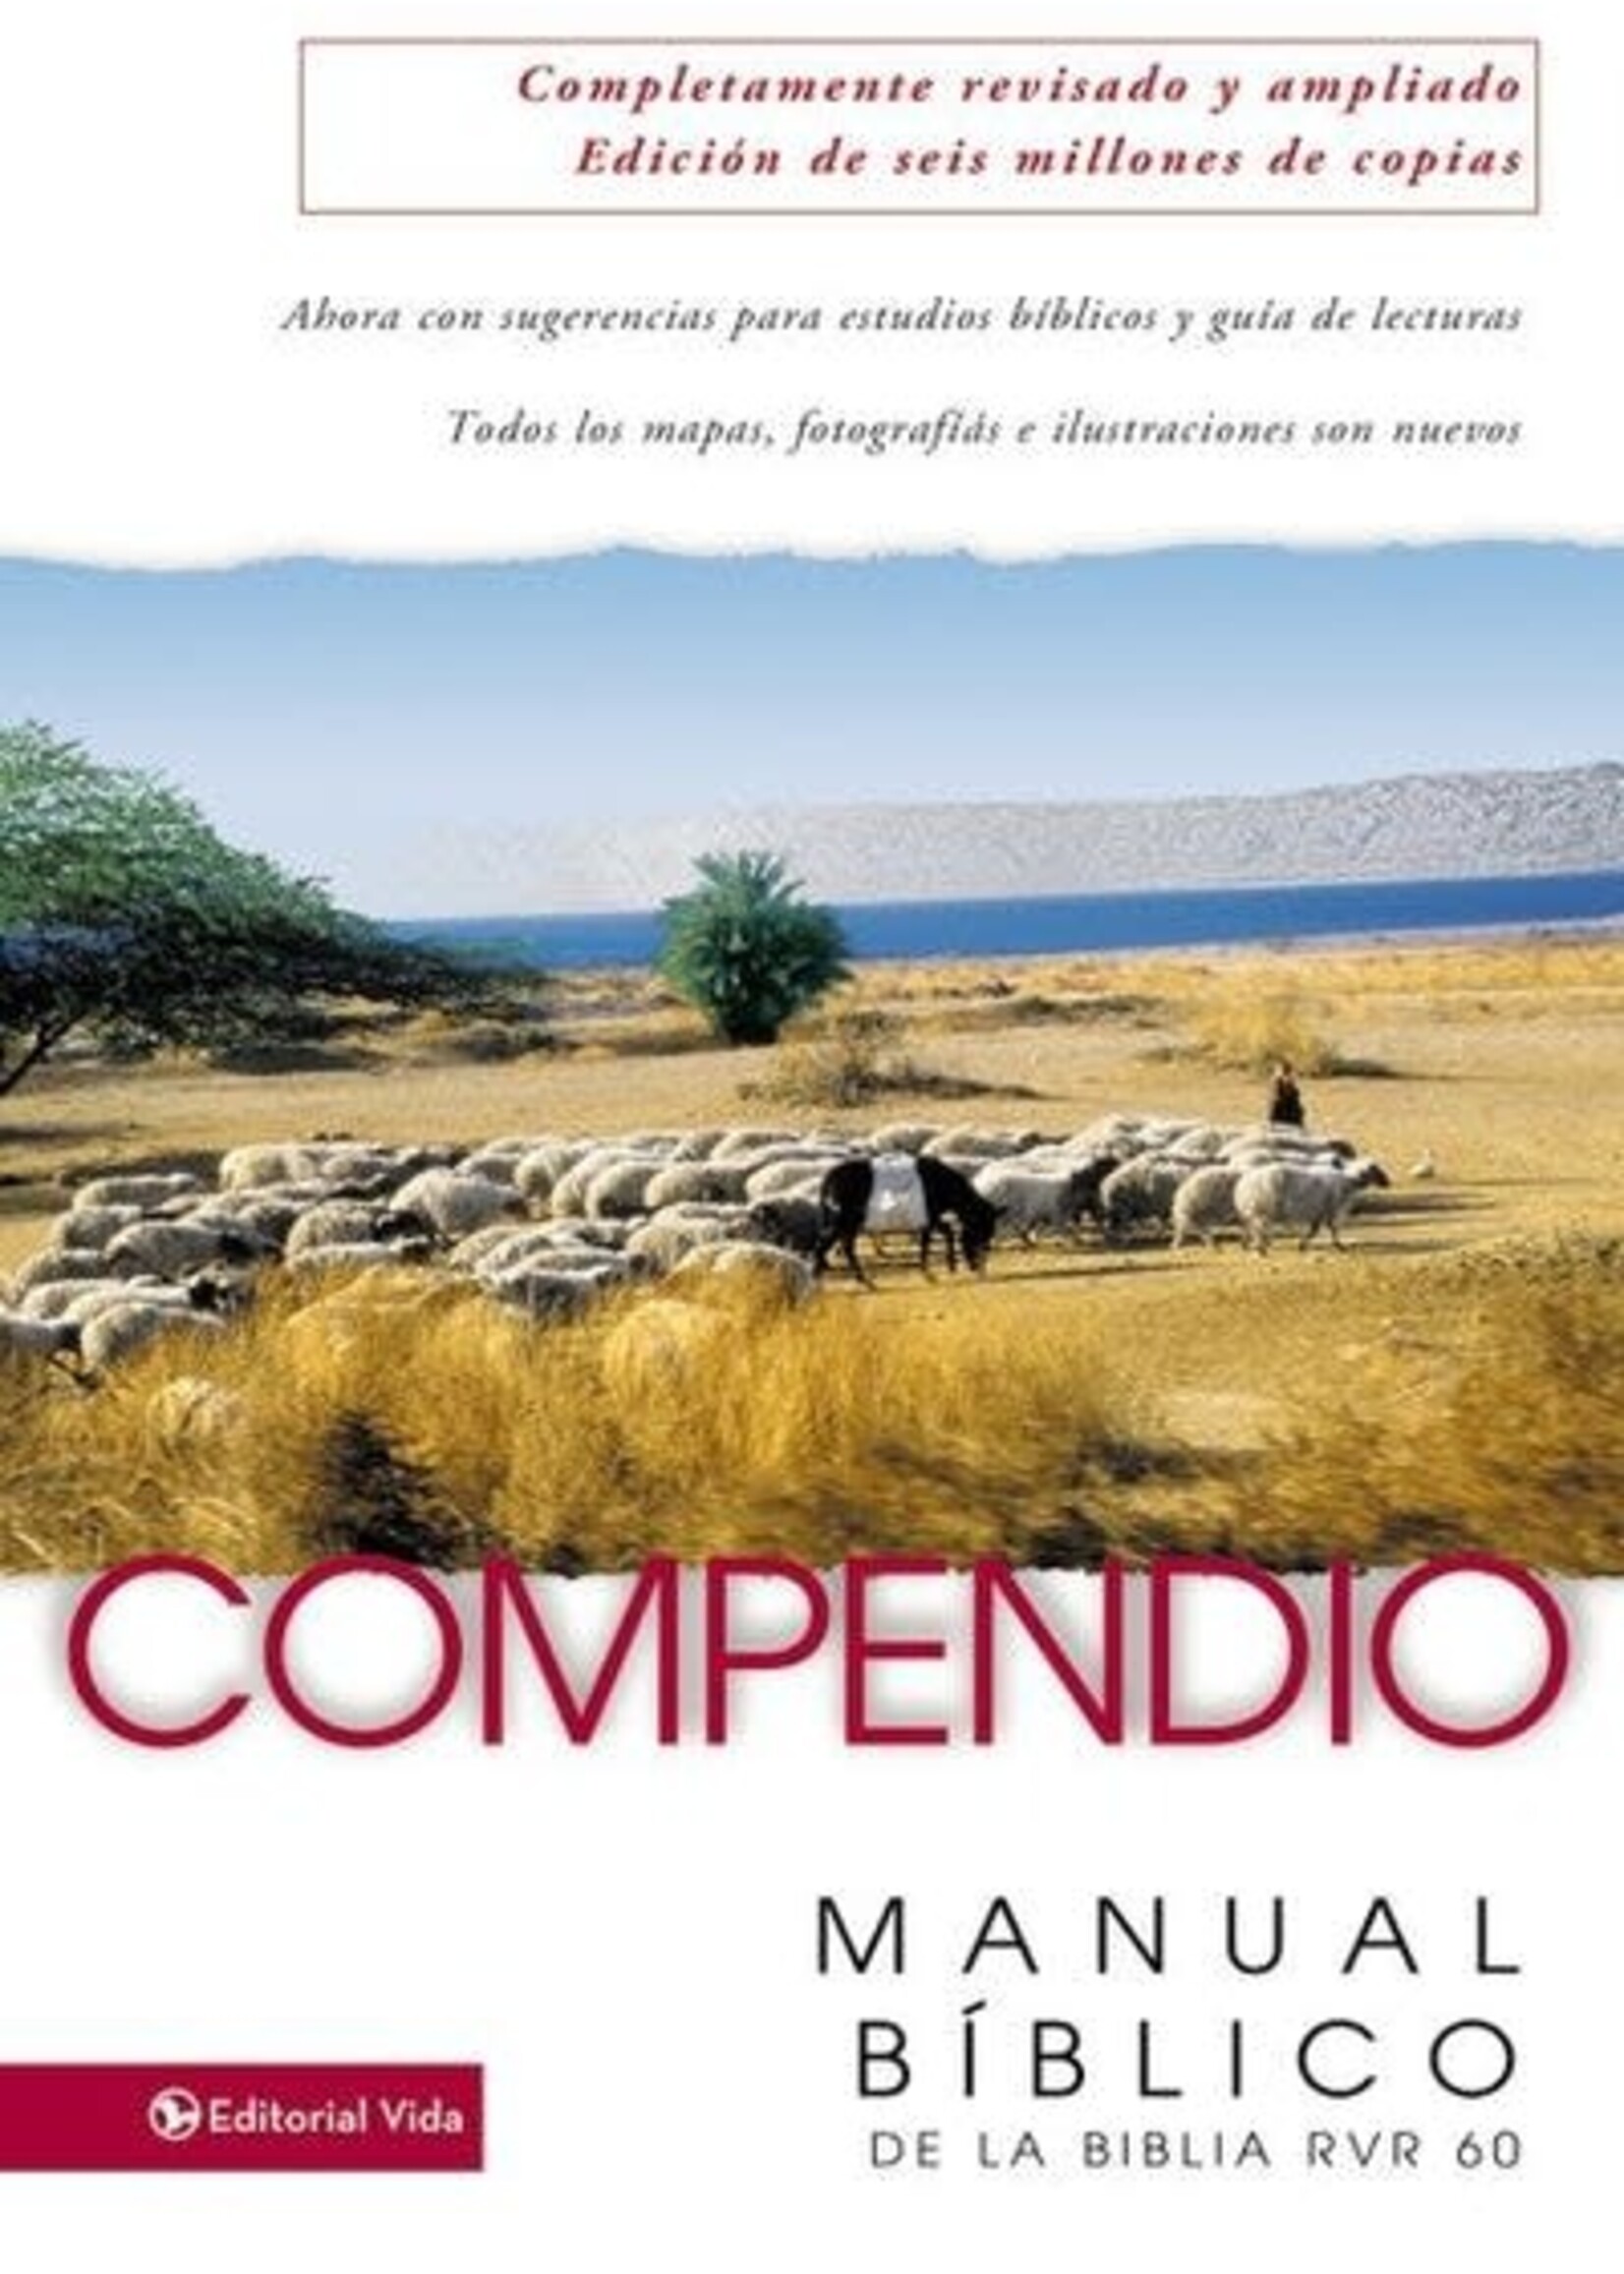 EDITORIAL VIDA COMPENDIO MANUAL BIBLICO RVR60